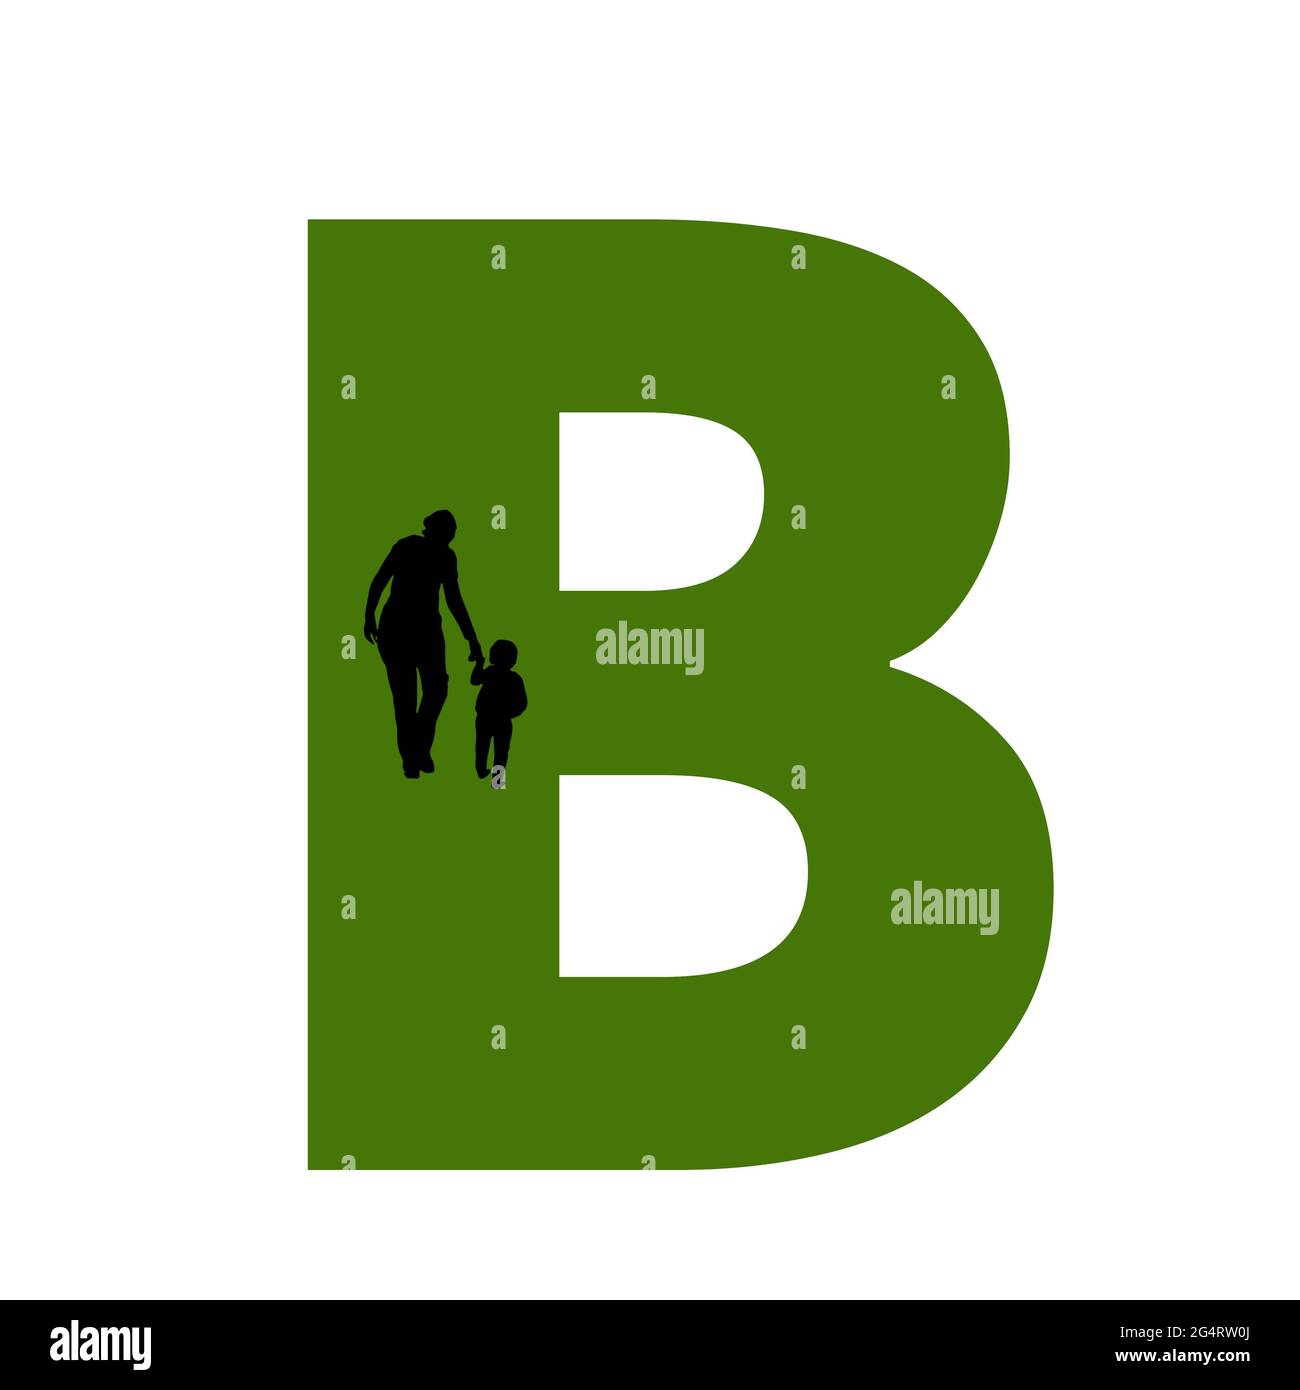 Lettre B de l'alphabet avec silhouette d'une mère et d'un enfant marchant, en vert et noir Banque D'Images